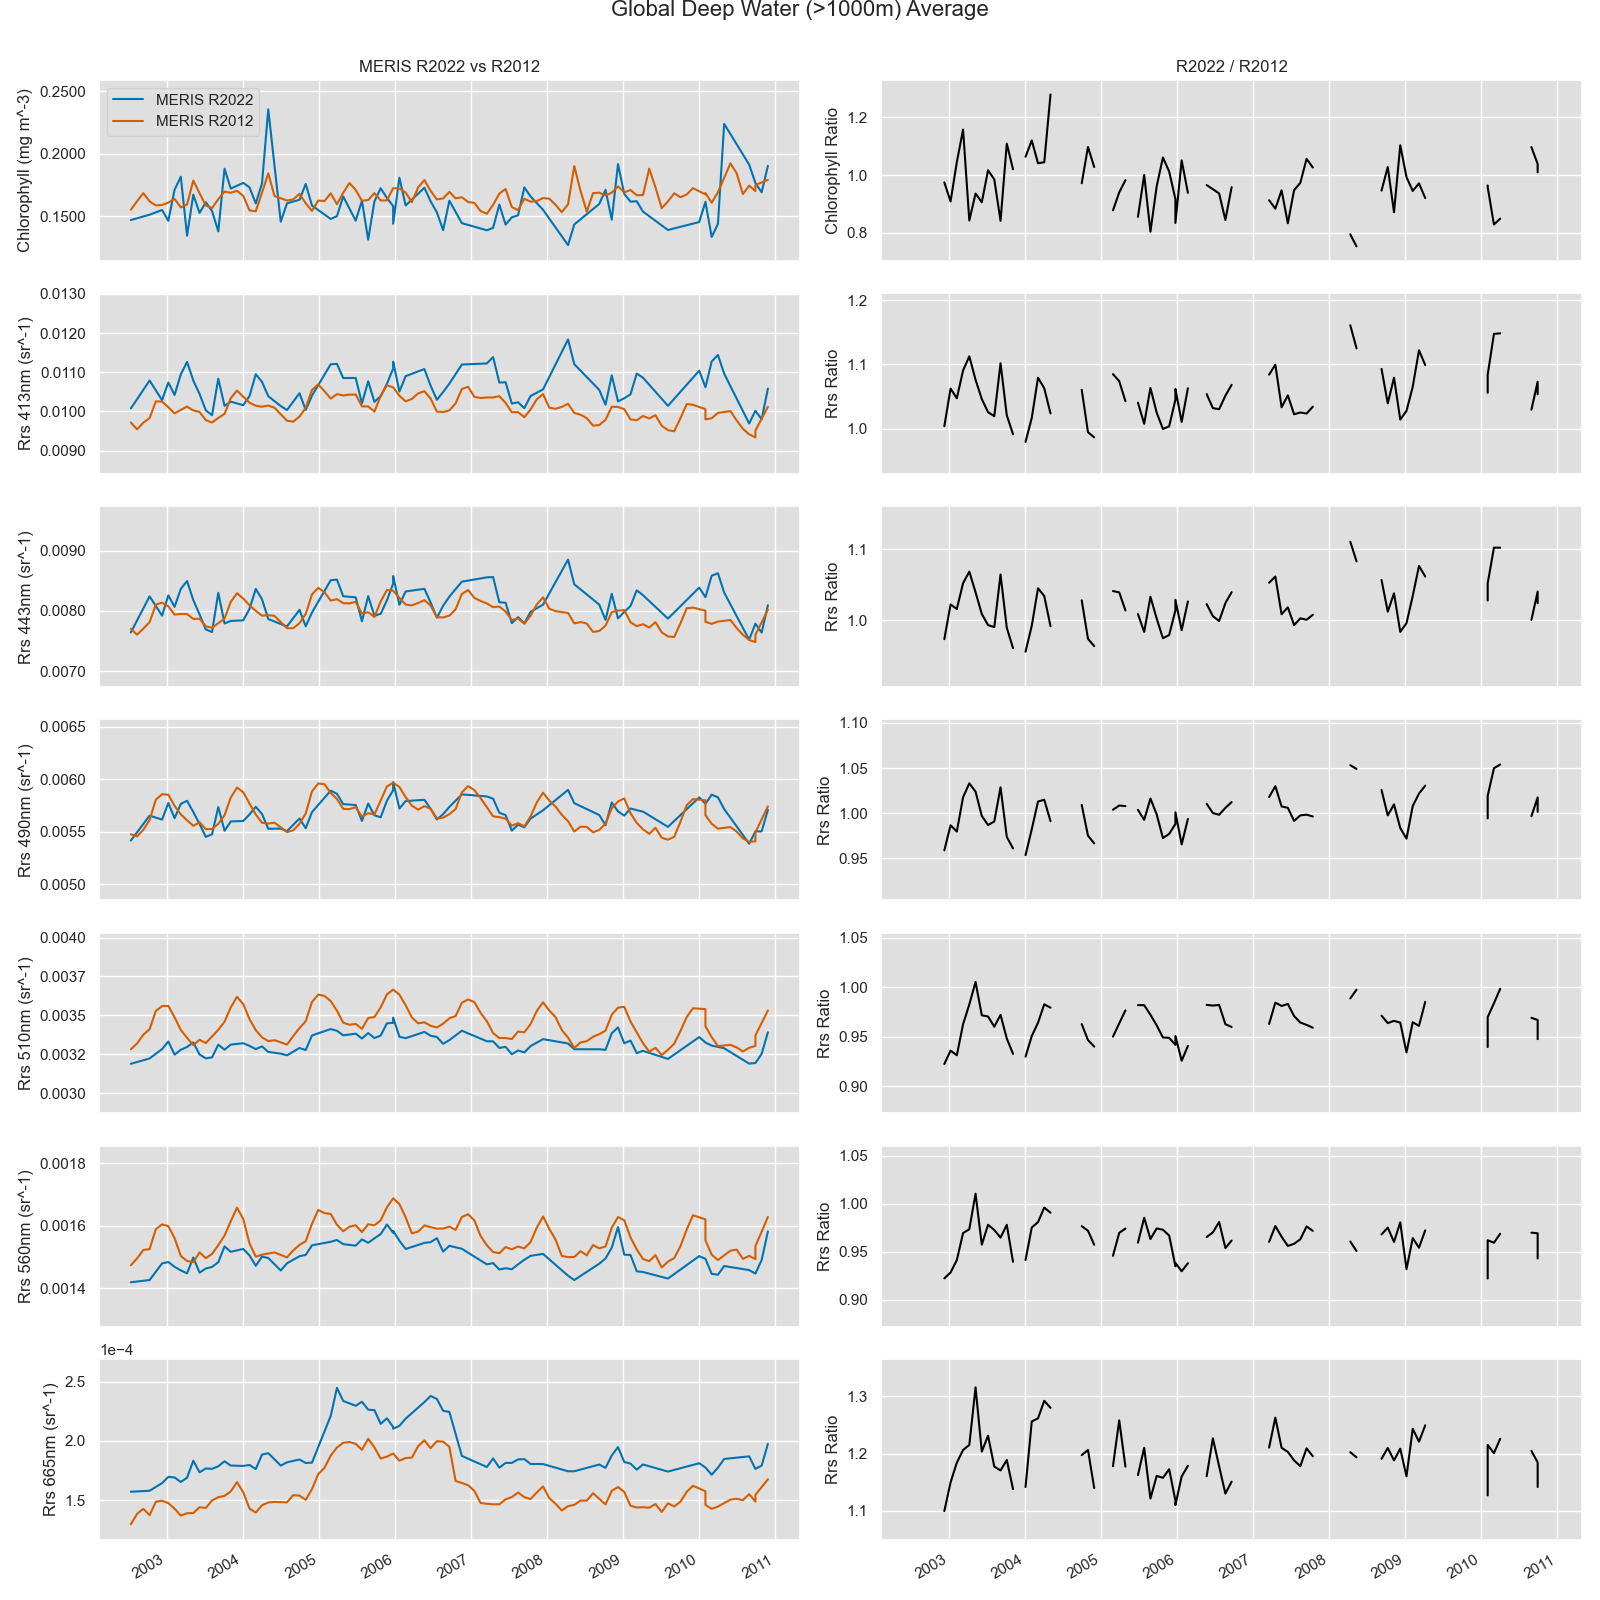 Deep water time series comparisons of MERIS R2012 vs. R2022